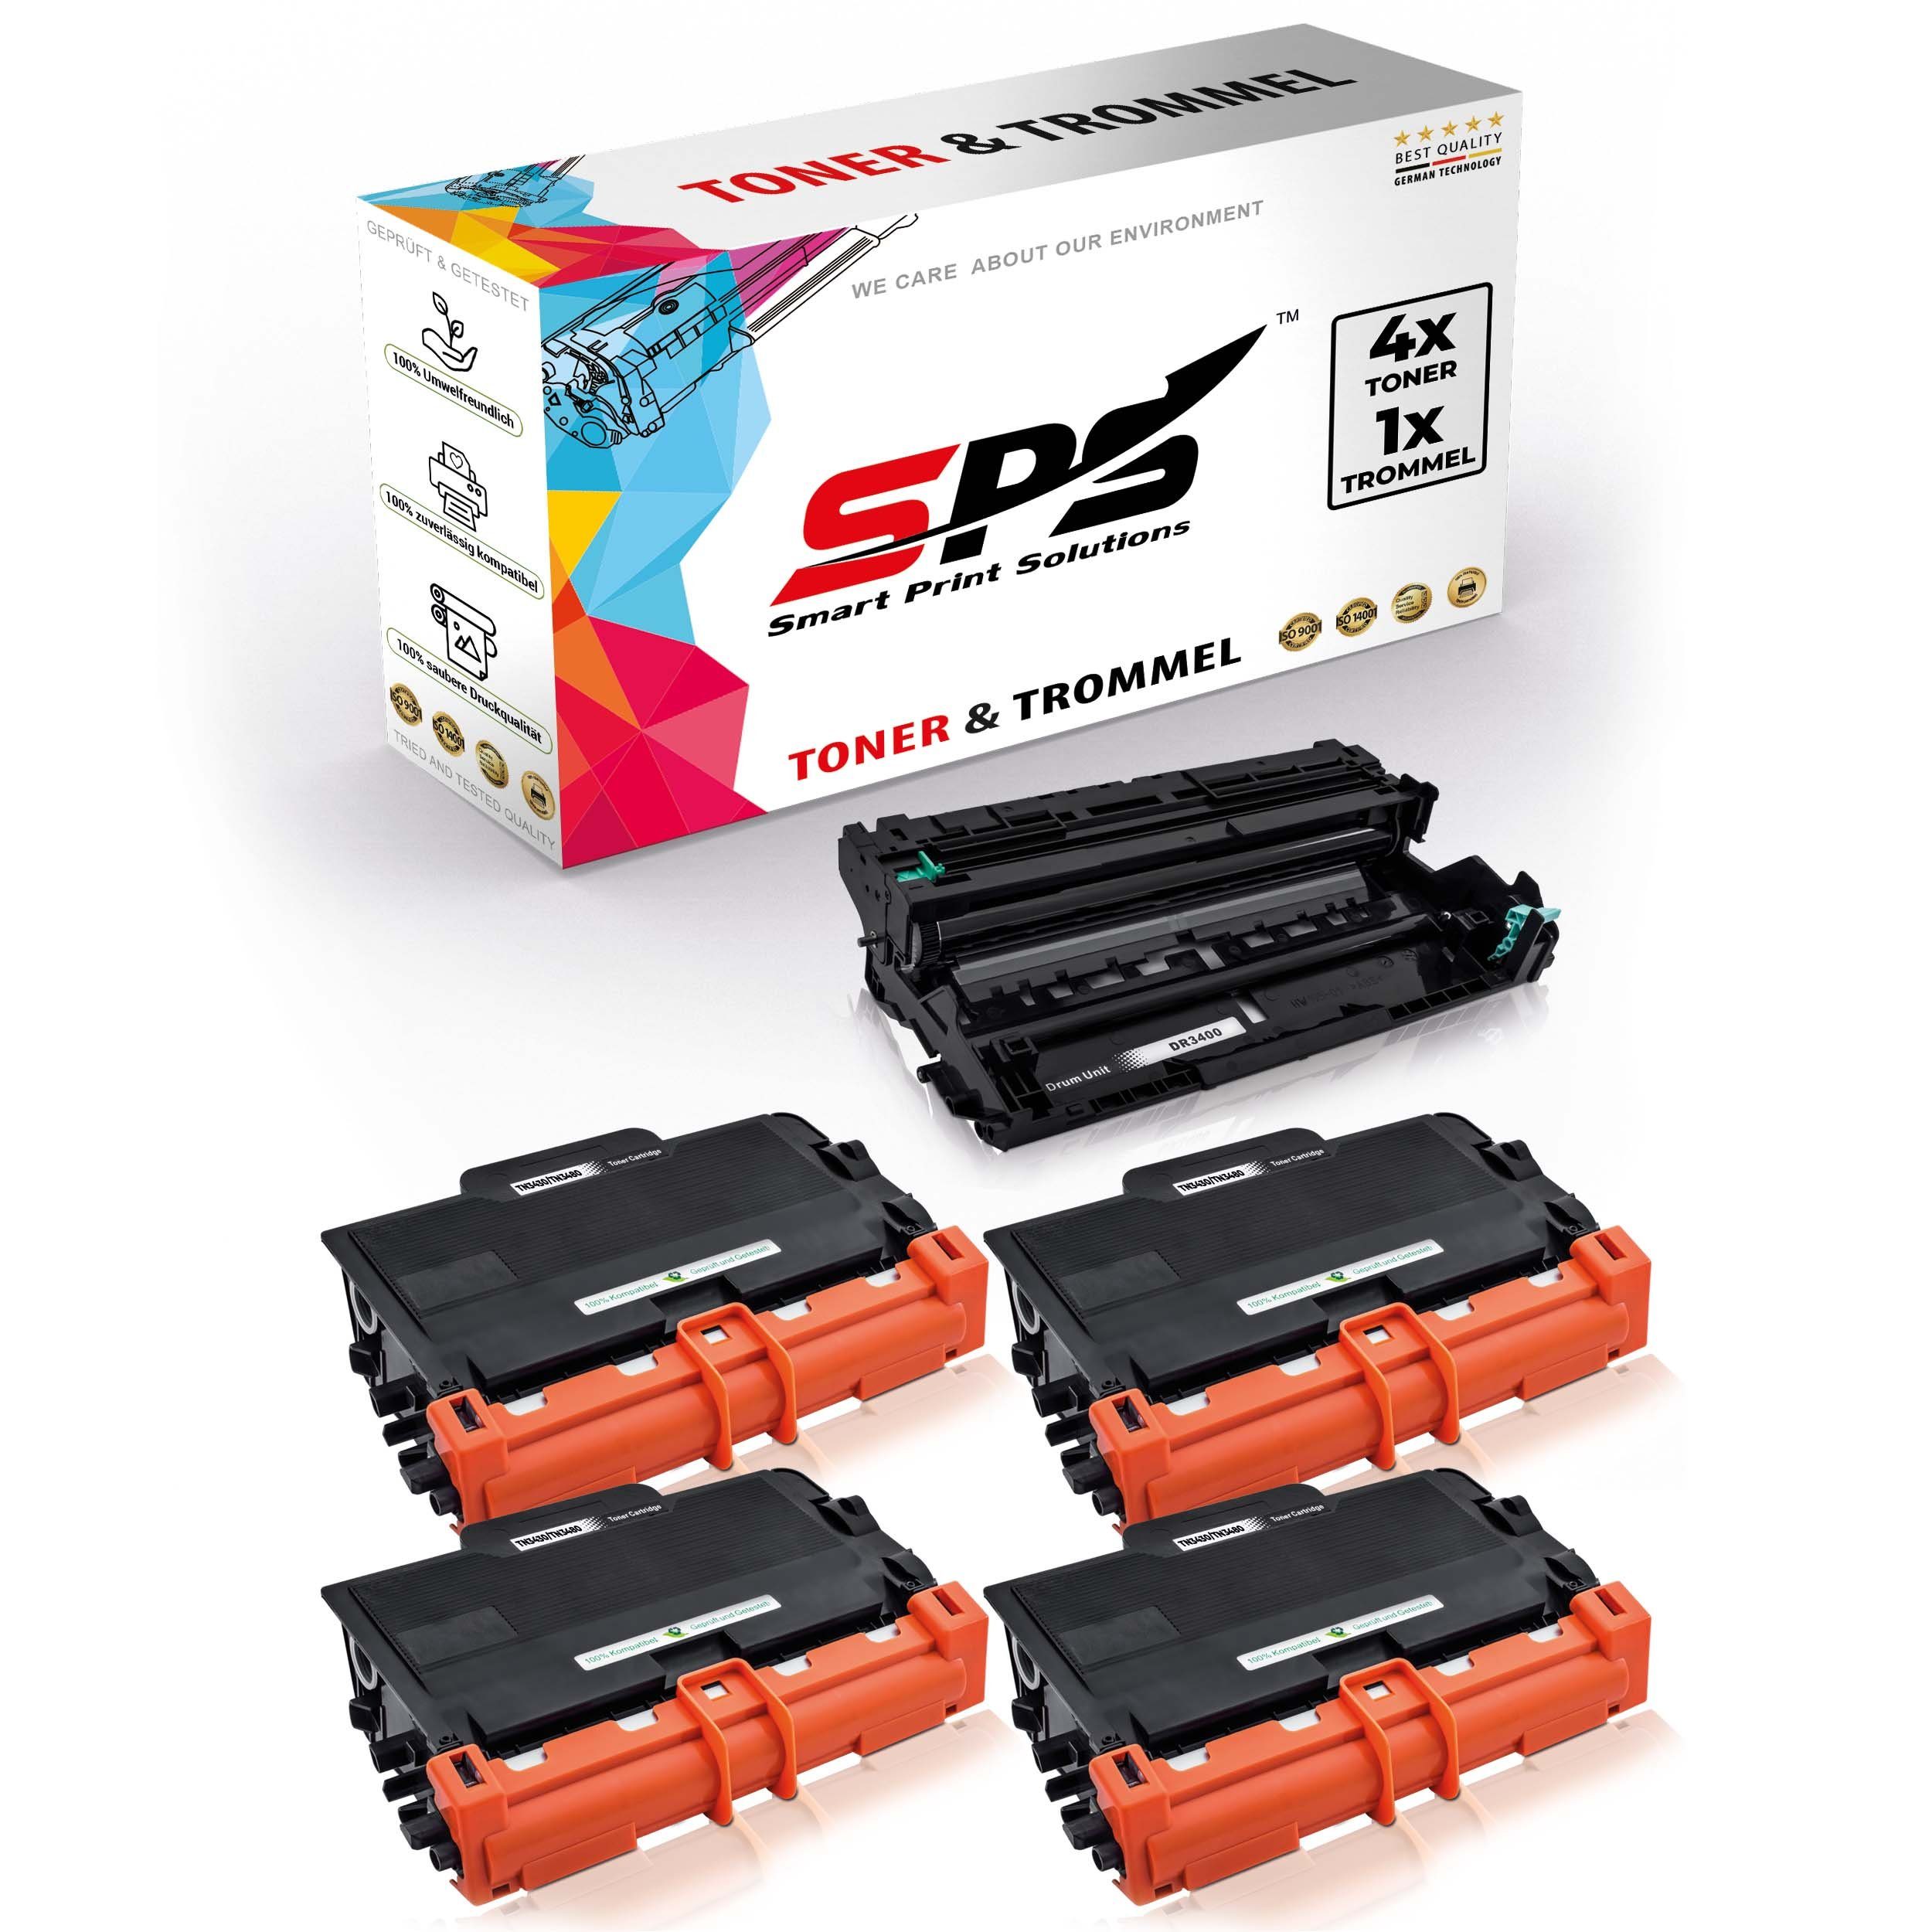 SPS Tonerkartusche Kompatibel für Brother HL-L5100 TN-3430, DR-3400 (5er Pack)